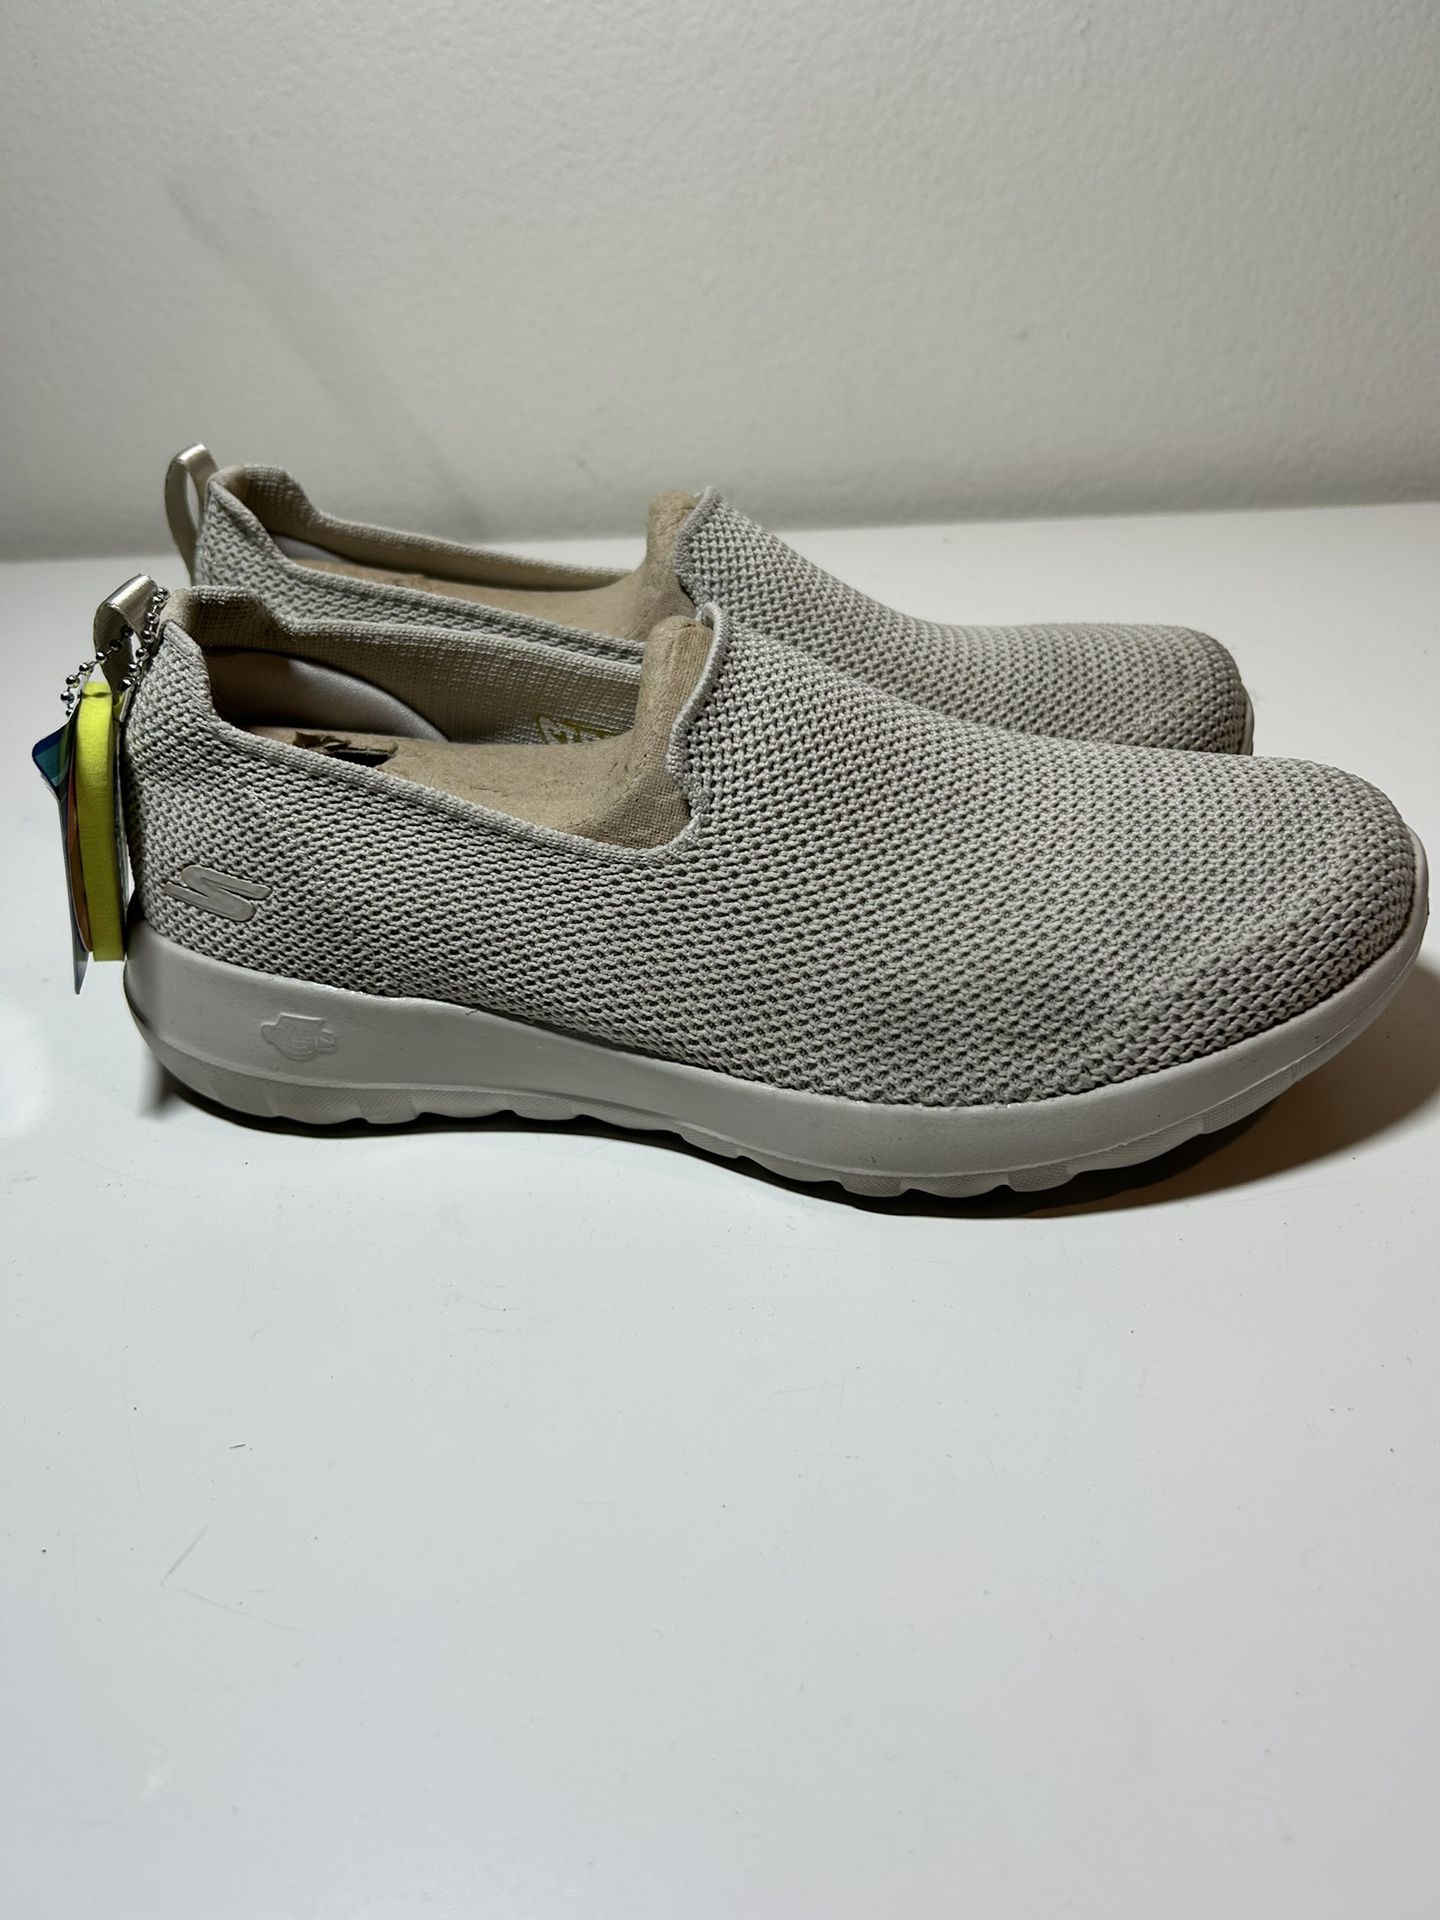 Vergemakkelijken Voorkomen Regeneratie B7 womens skechers air cooled goga mat shoes size 7.5 for Sale in Irvine,  CA - OfferUp